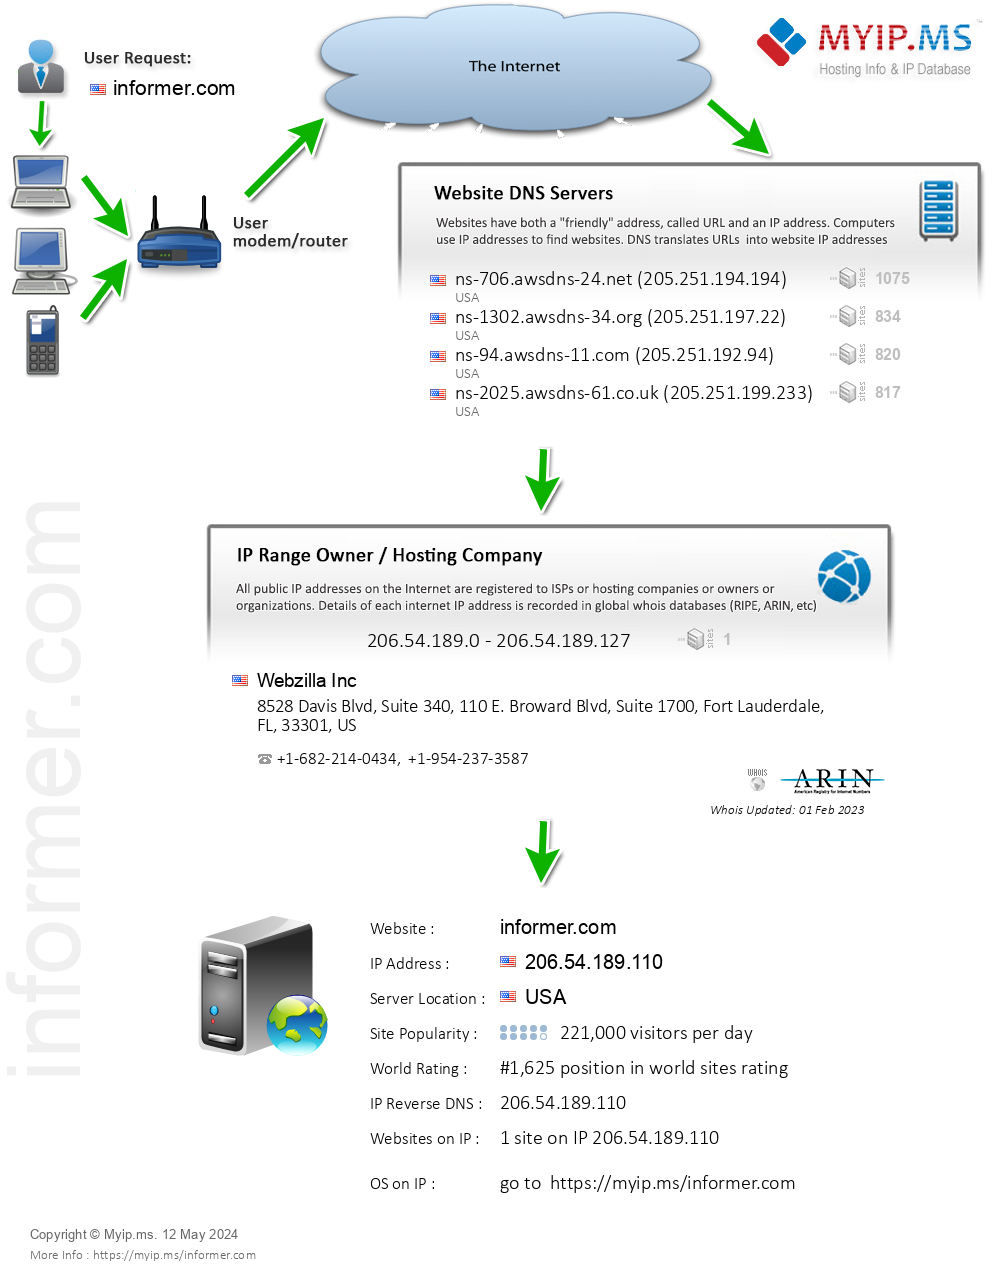 Informer.com - Website Hosting Visual IP Diagram